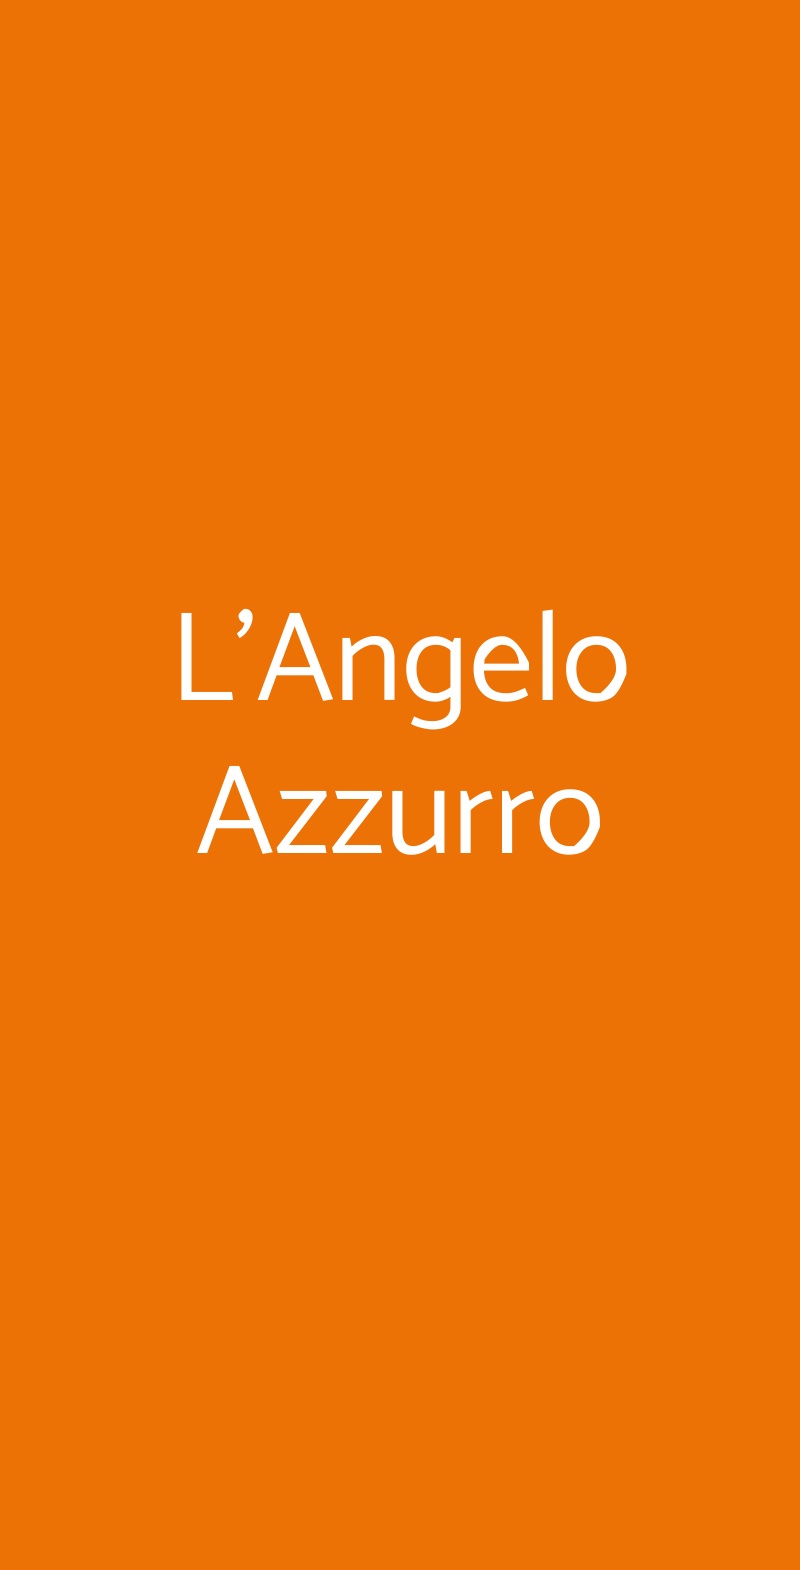 L'Angelo Azzurro Milano menù 1 pagina